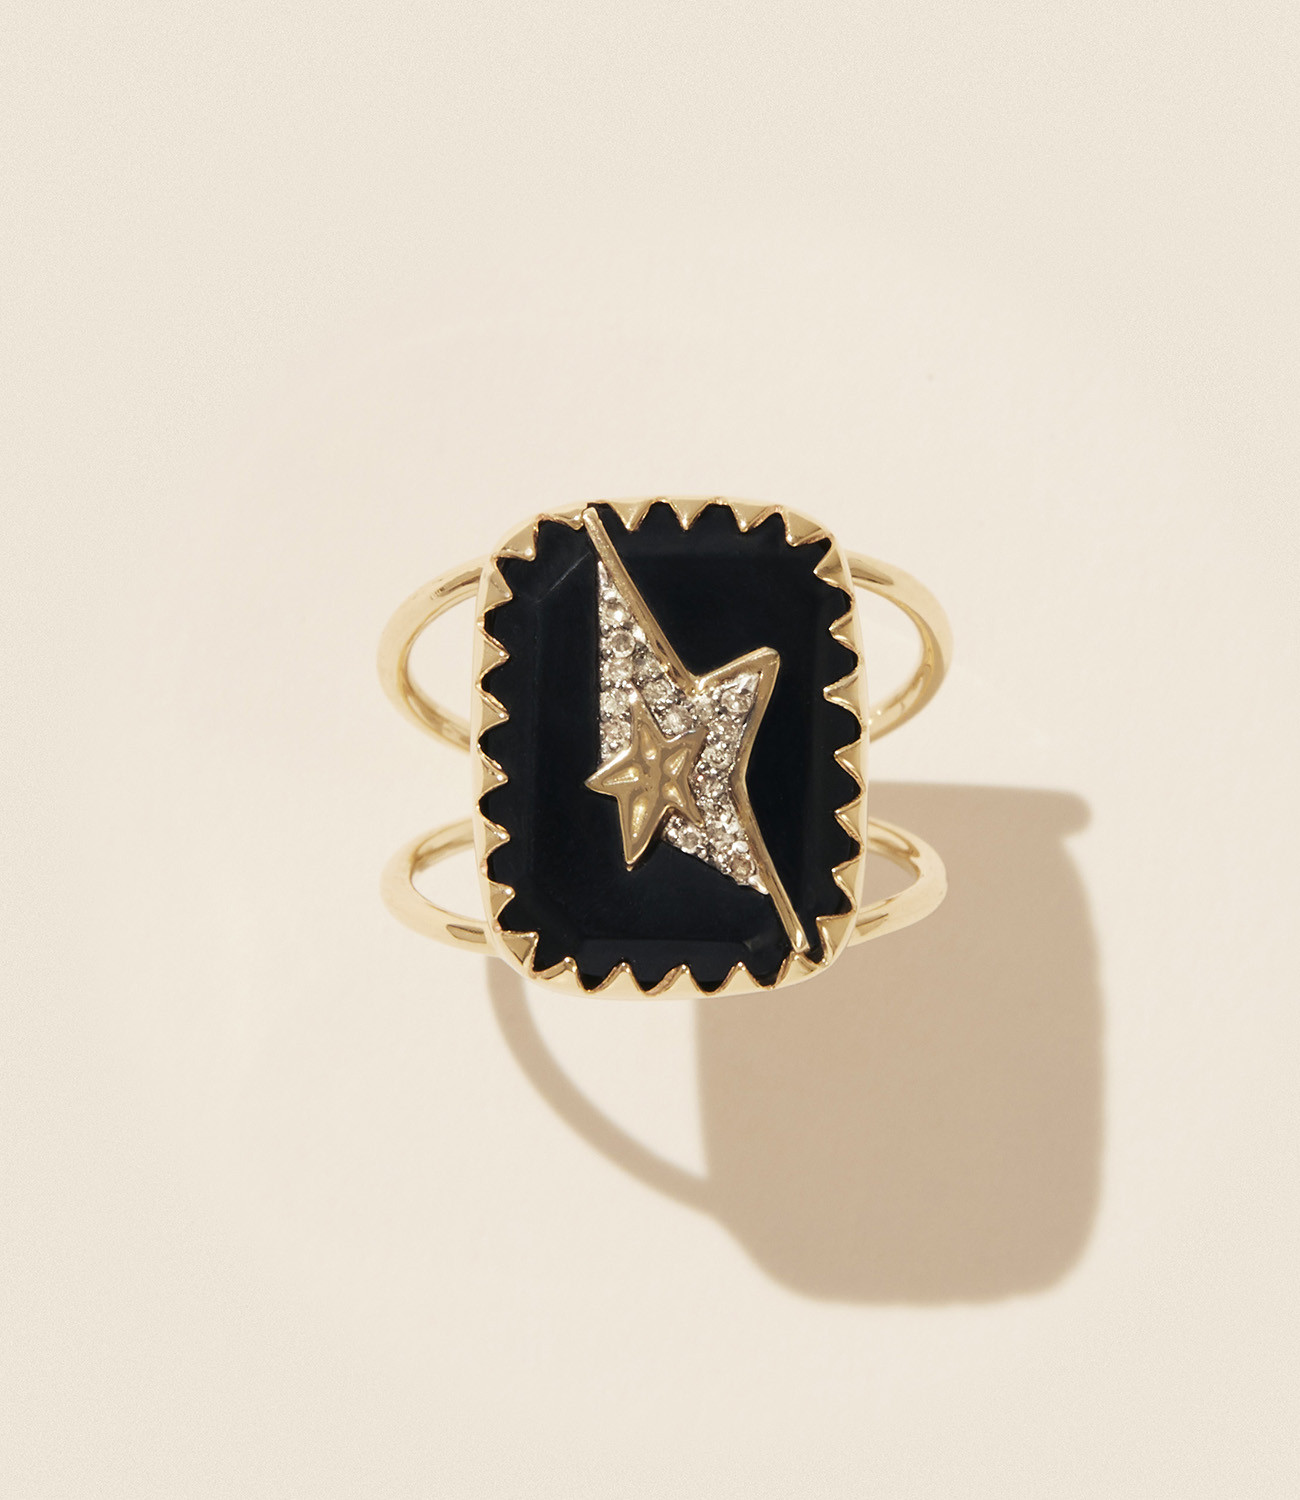 VARDA N°1 BLACK DIAMOND ring pascale monvoisin jewelry paris